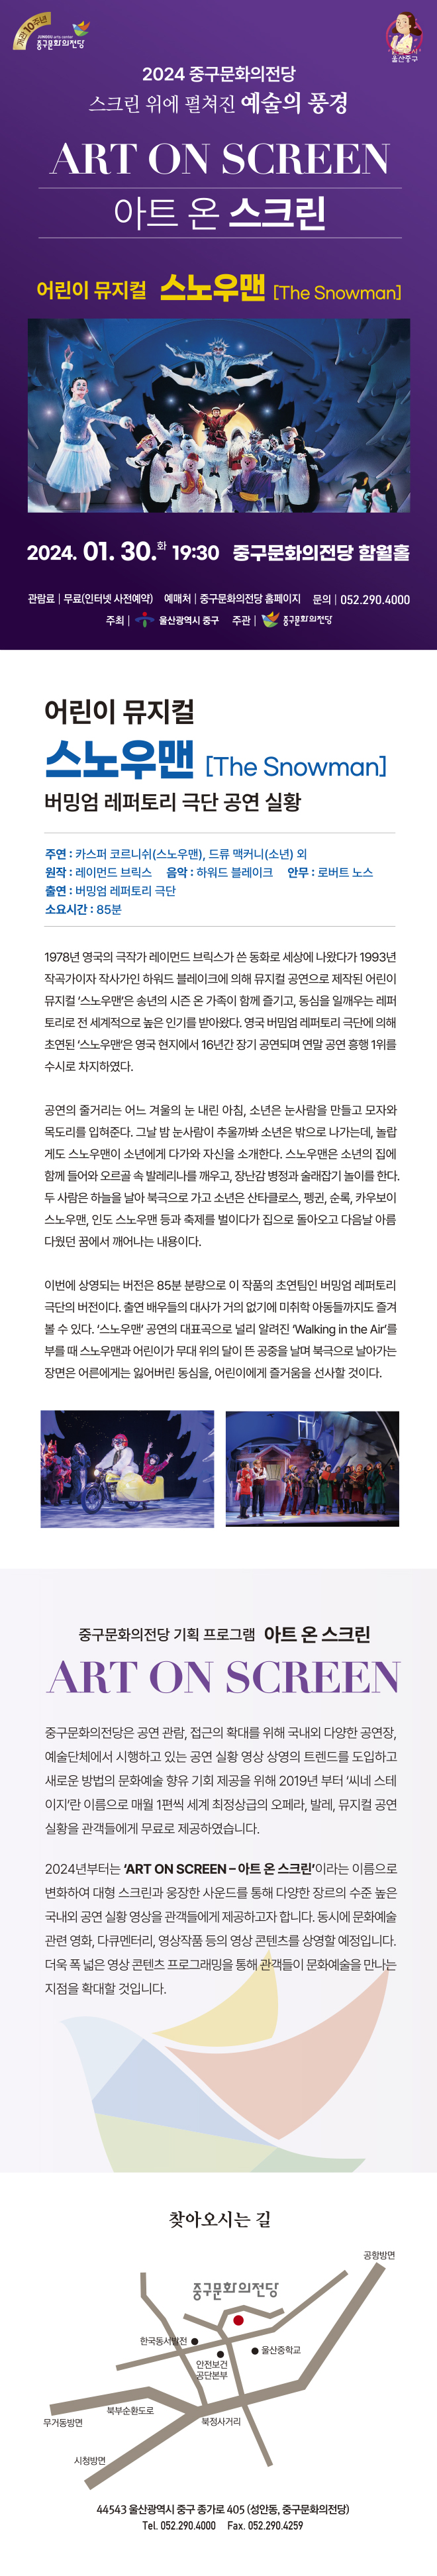 울산 중구문화의전당 스노우맨 어린이 뮤지컬 무료 티켓 예매